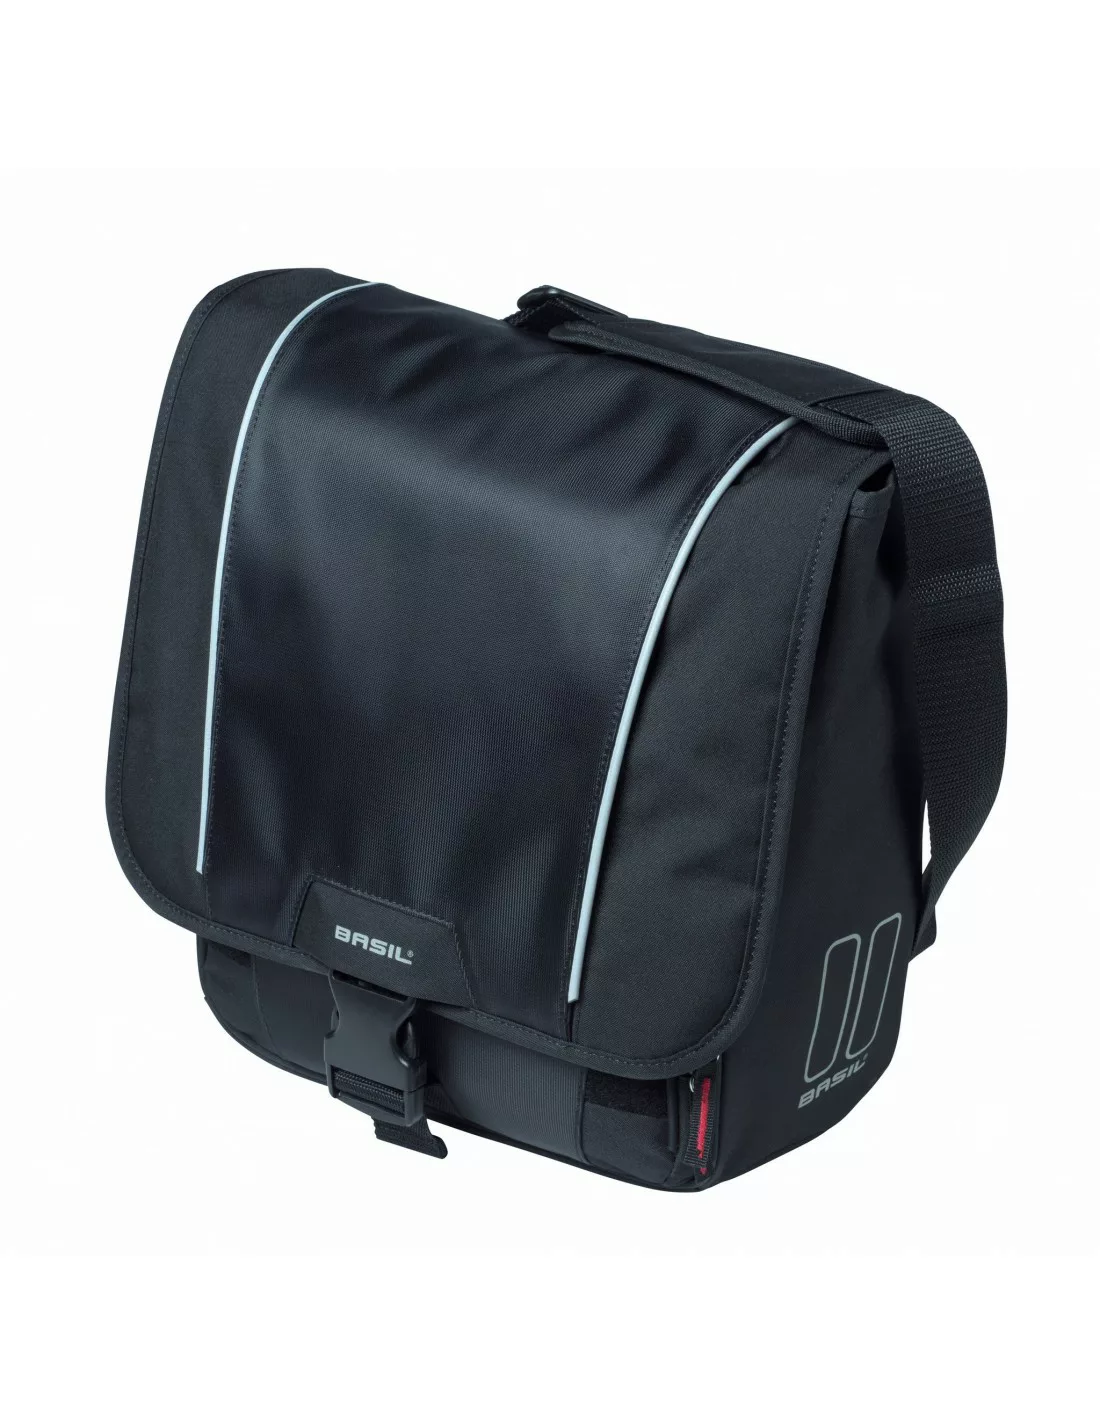 Basil Sport Design - einzel Fahrradtasche - 18 Liter - schwarz Taschenvaria günstig online kaufen